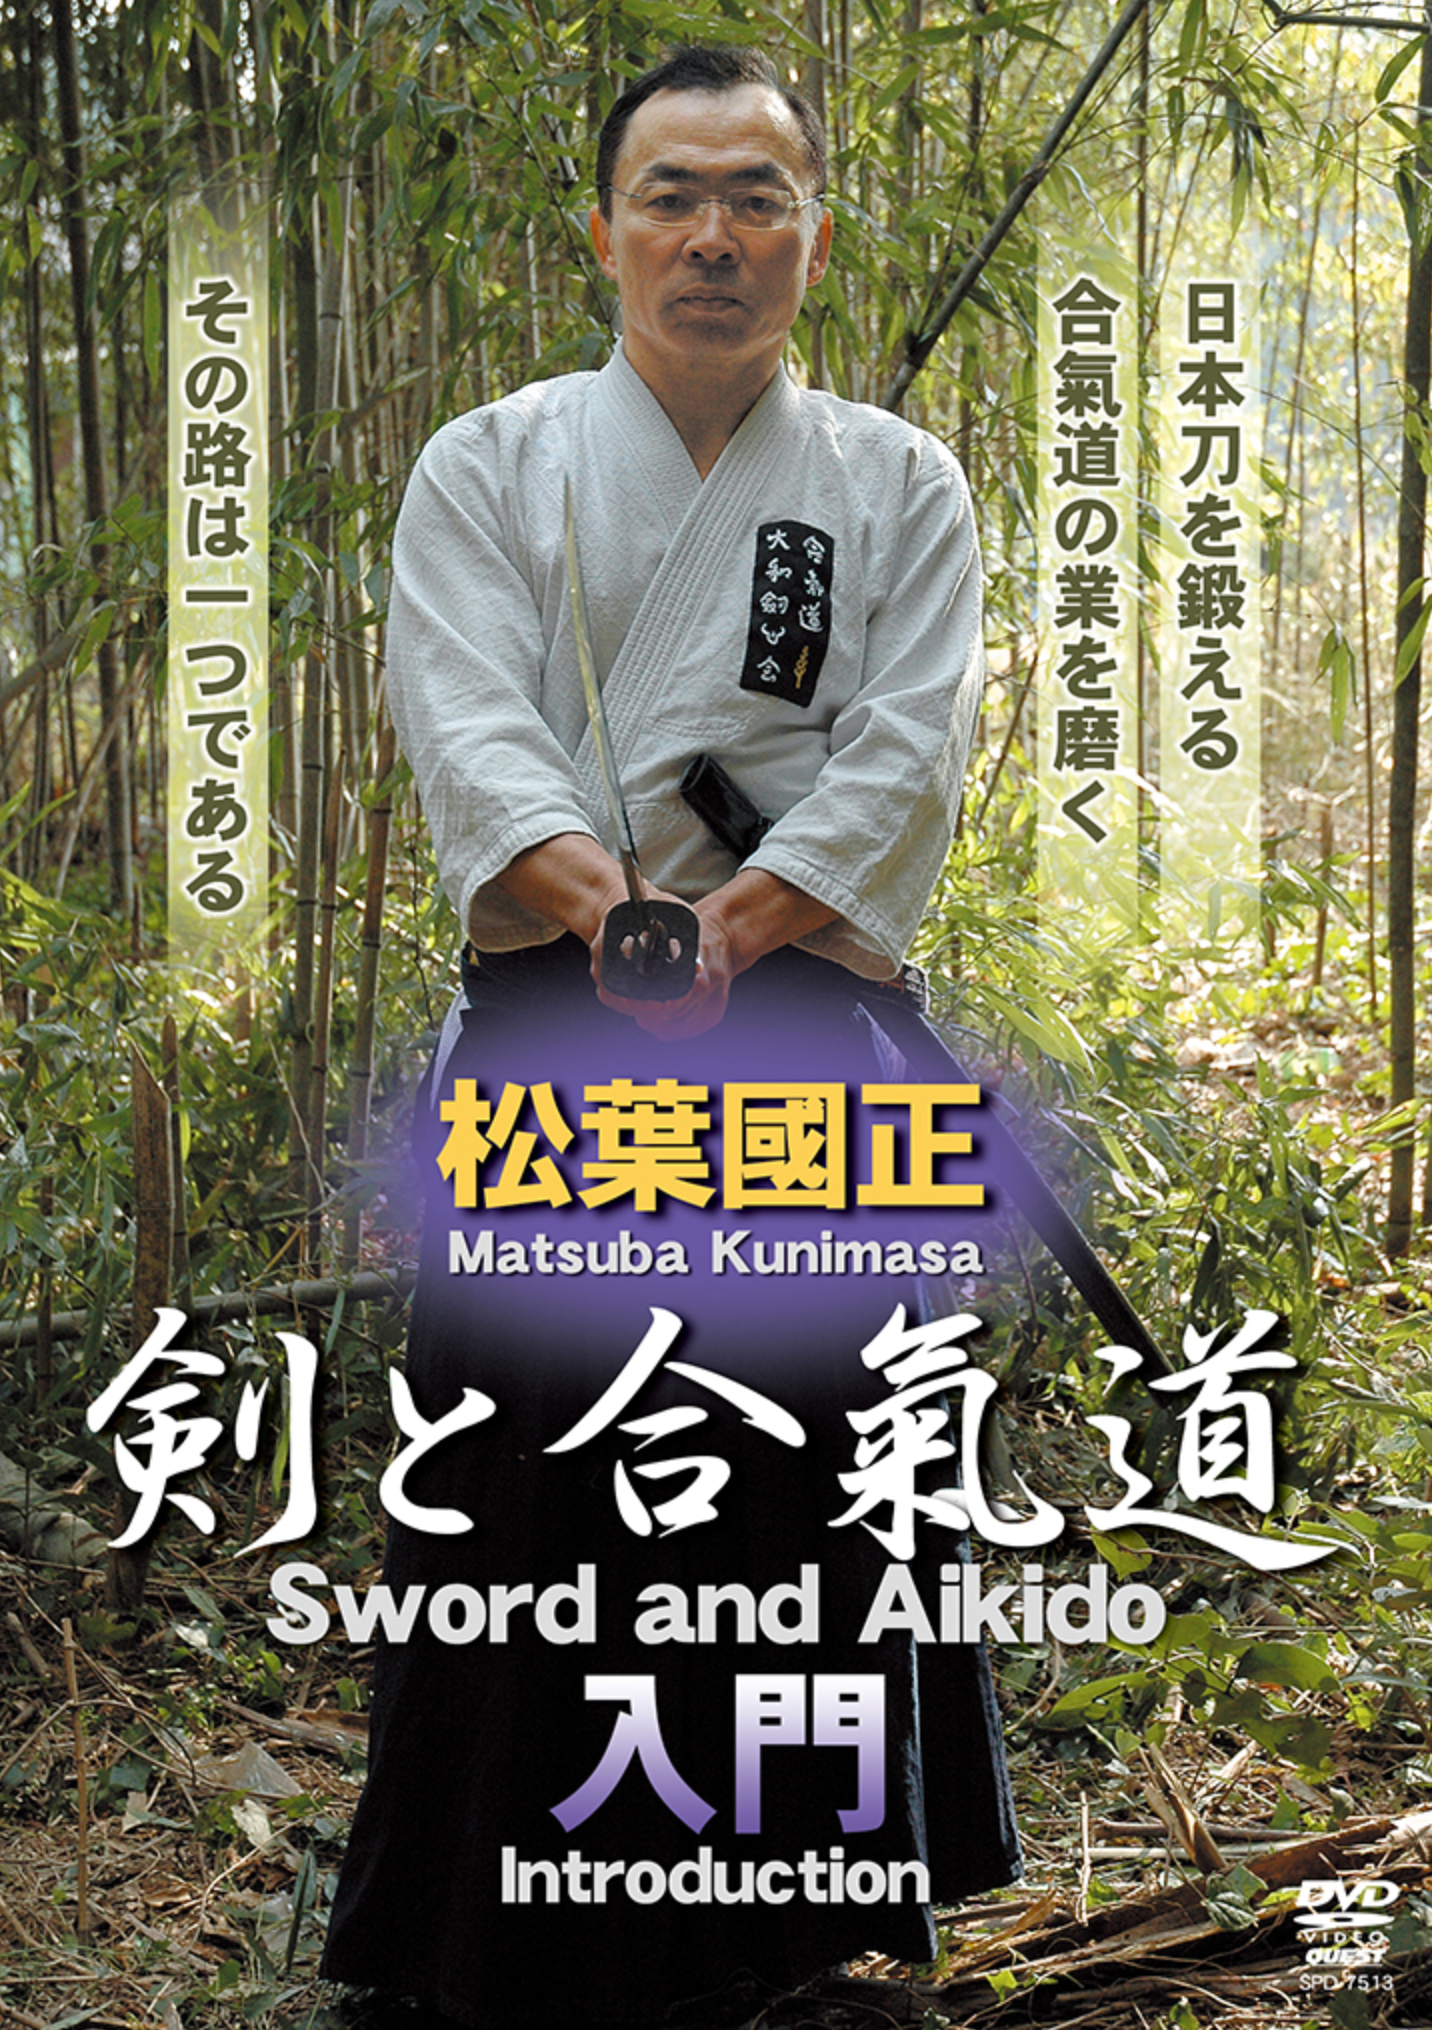 Intro to Sword & Aikido DVD with Kunimasa Matsuba - Budovideos Inc